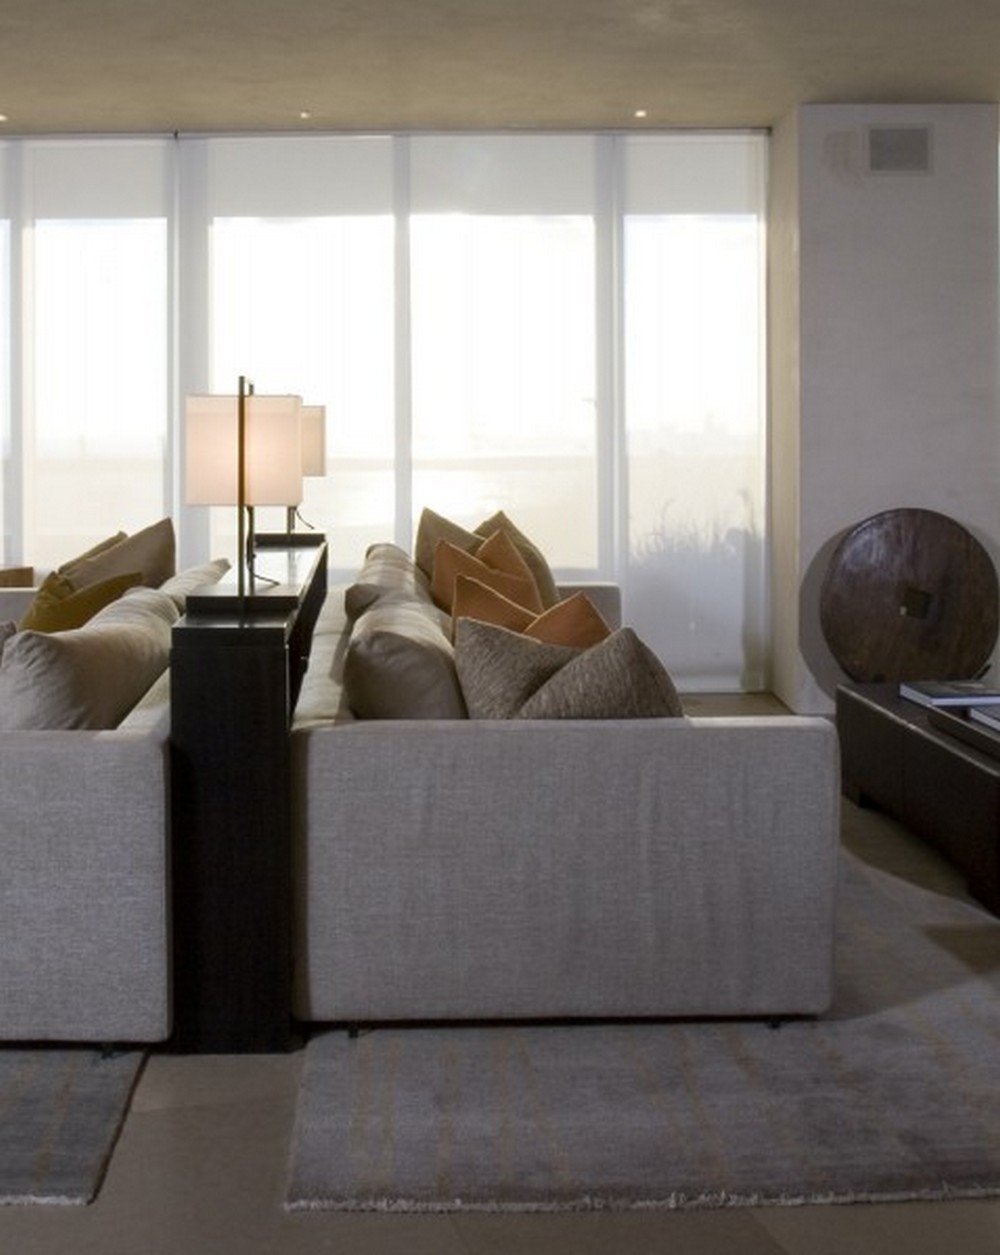 Clodagh's Contemporary Living Room Designs Are Super Inspirational